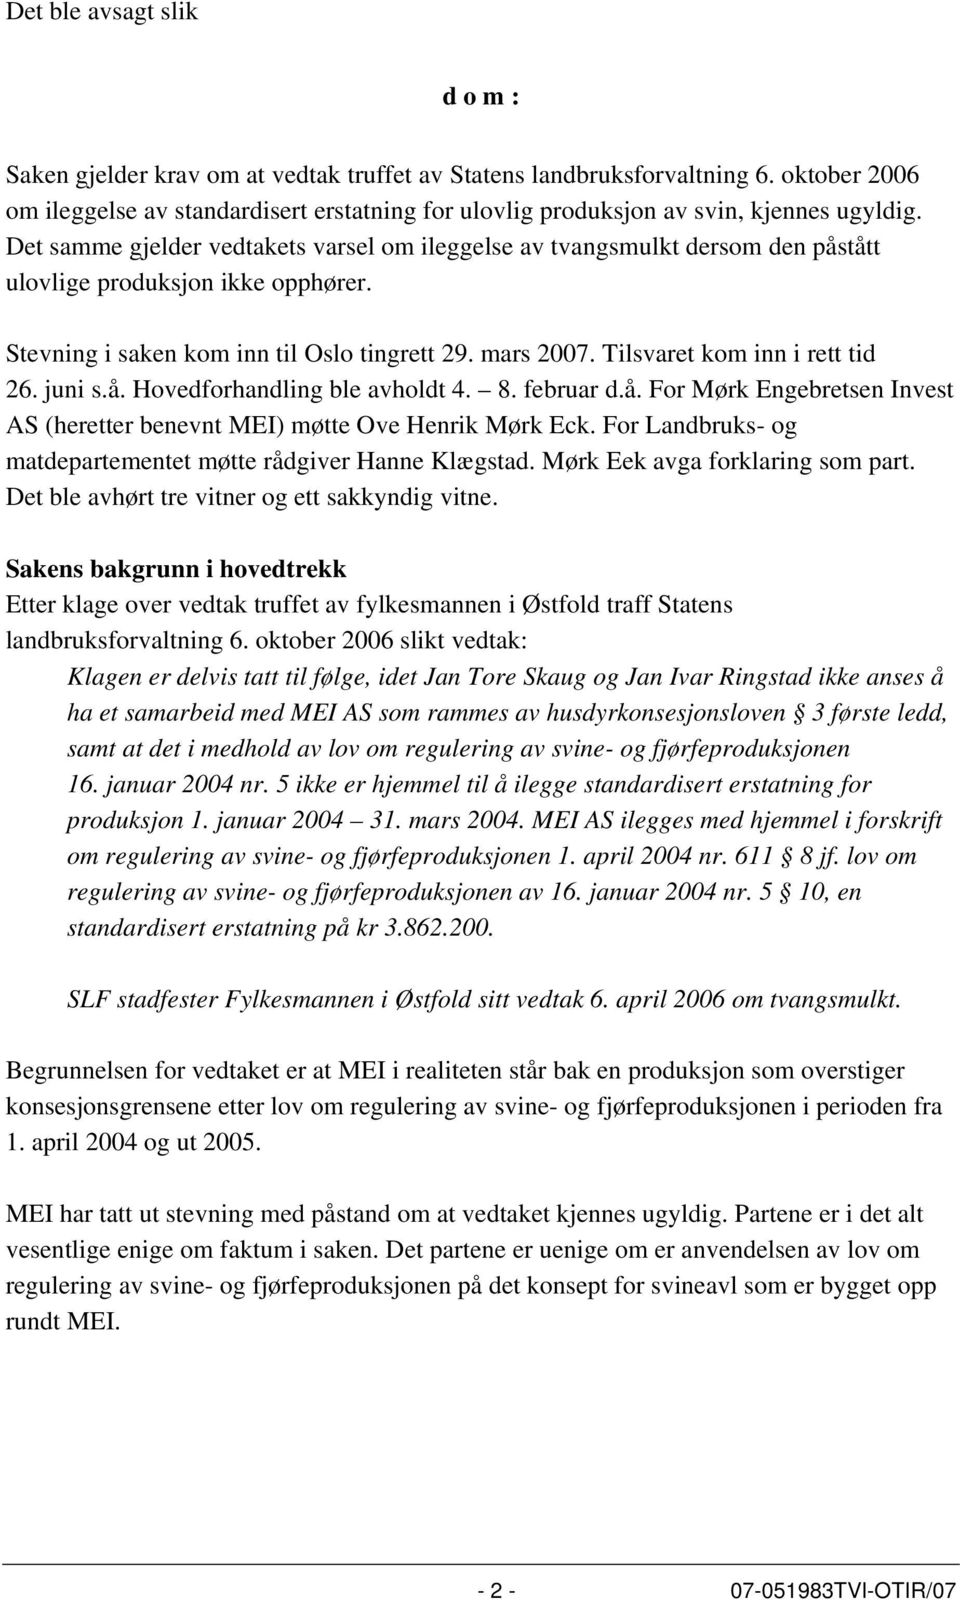 Det samme gjelder vedtakets varsel om ileggelse av tvangsmulkt dersom den påstått ulovlige produksjon ikke opphører. Stevning i saken kom inn til Oslo tingrett 29. mars 2007.